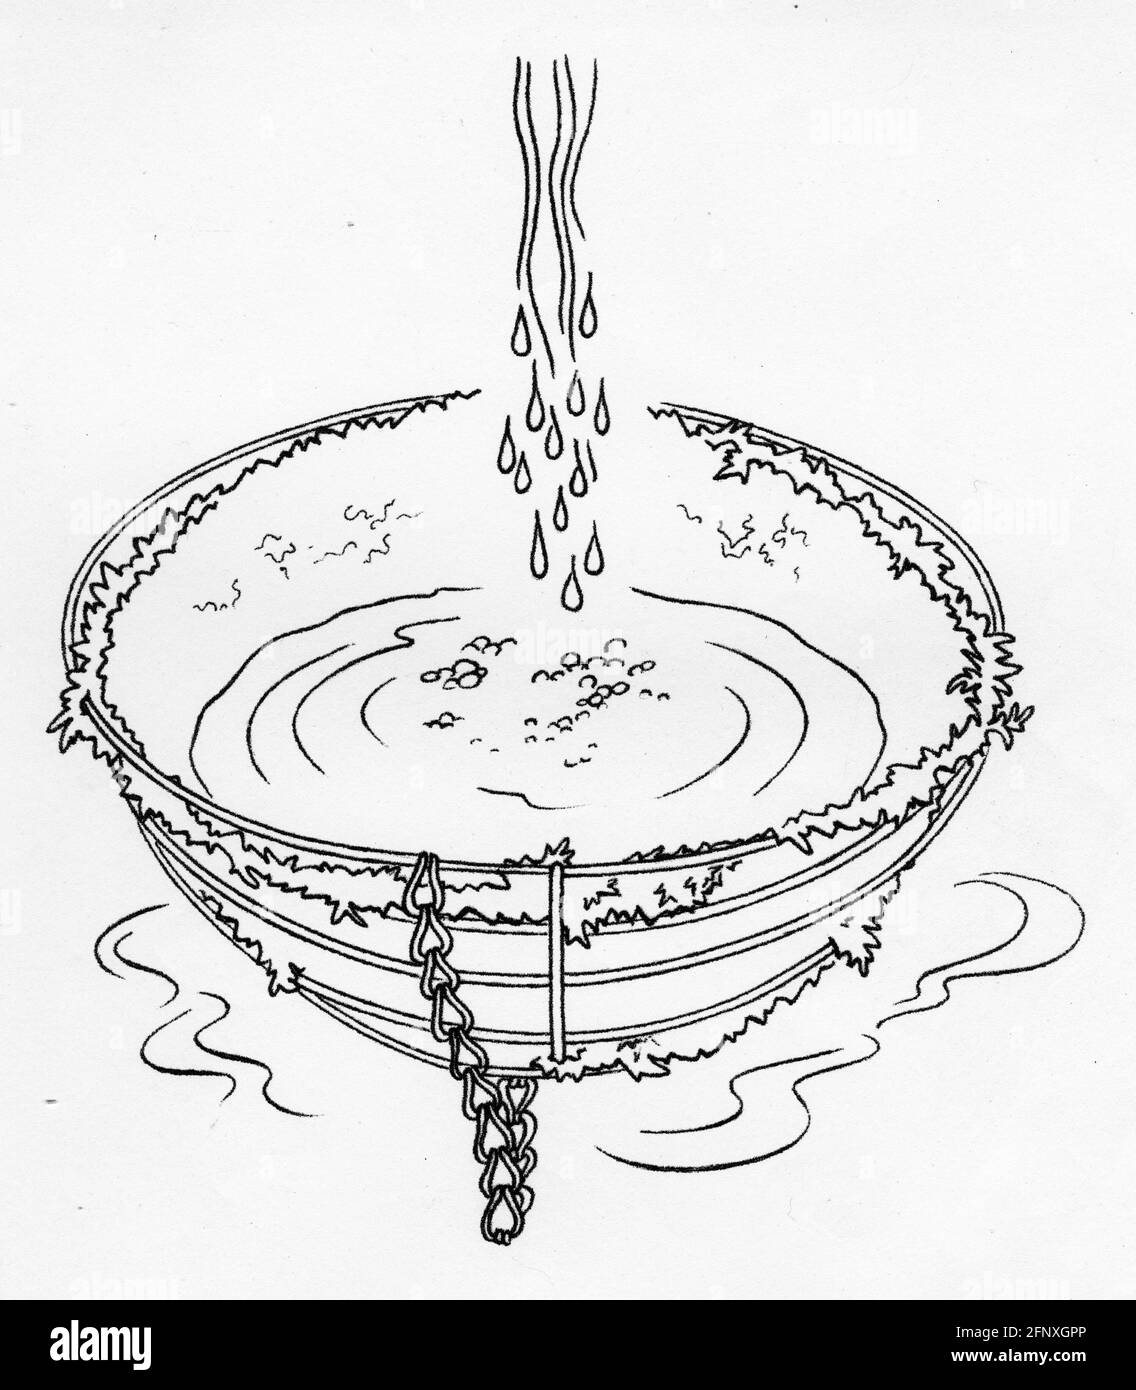 Un dessin d'eau trempant une doublure de mousse de sphagnum dans un panier suspendu. La mousse de Sphagnum peut absorber 20 fois son propre poids dans l'eau. Banque D'Images